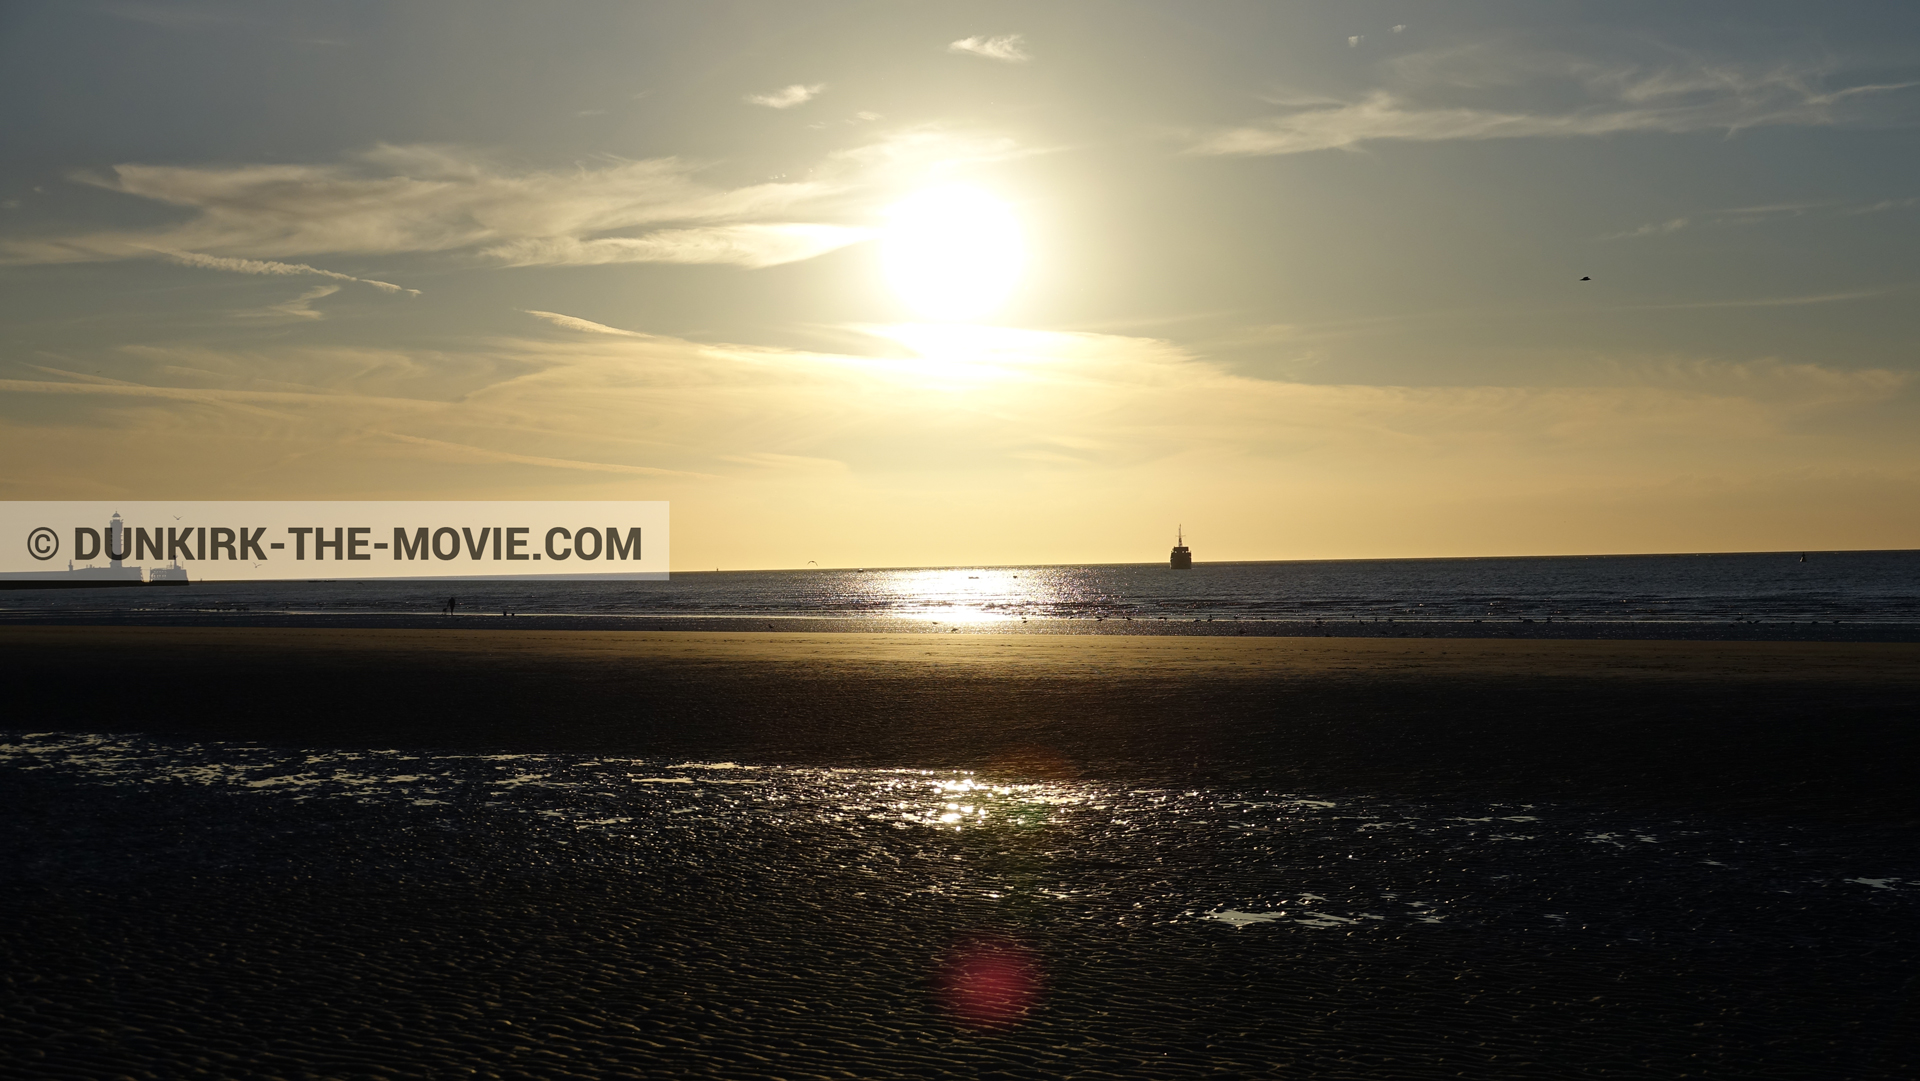 Fotos con barco, cielo anaranjado, faro de Saint-Pol-sur-Mer,  durante el rodaje de la película Dunkerque de Nolan